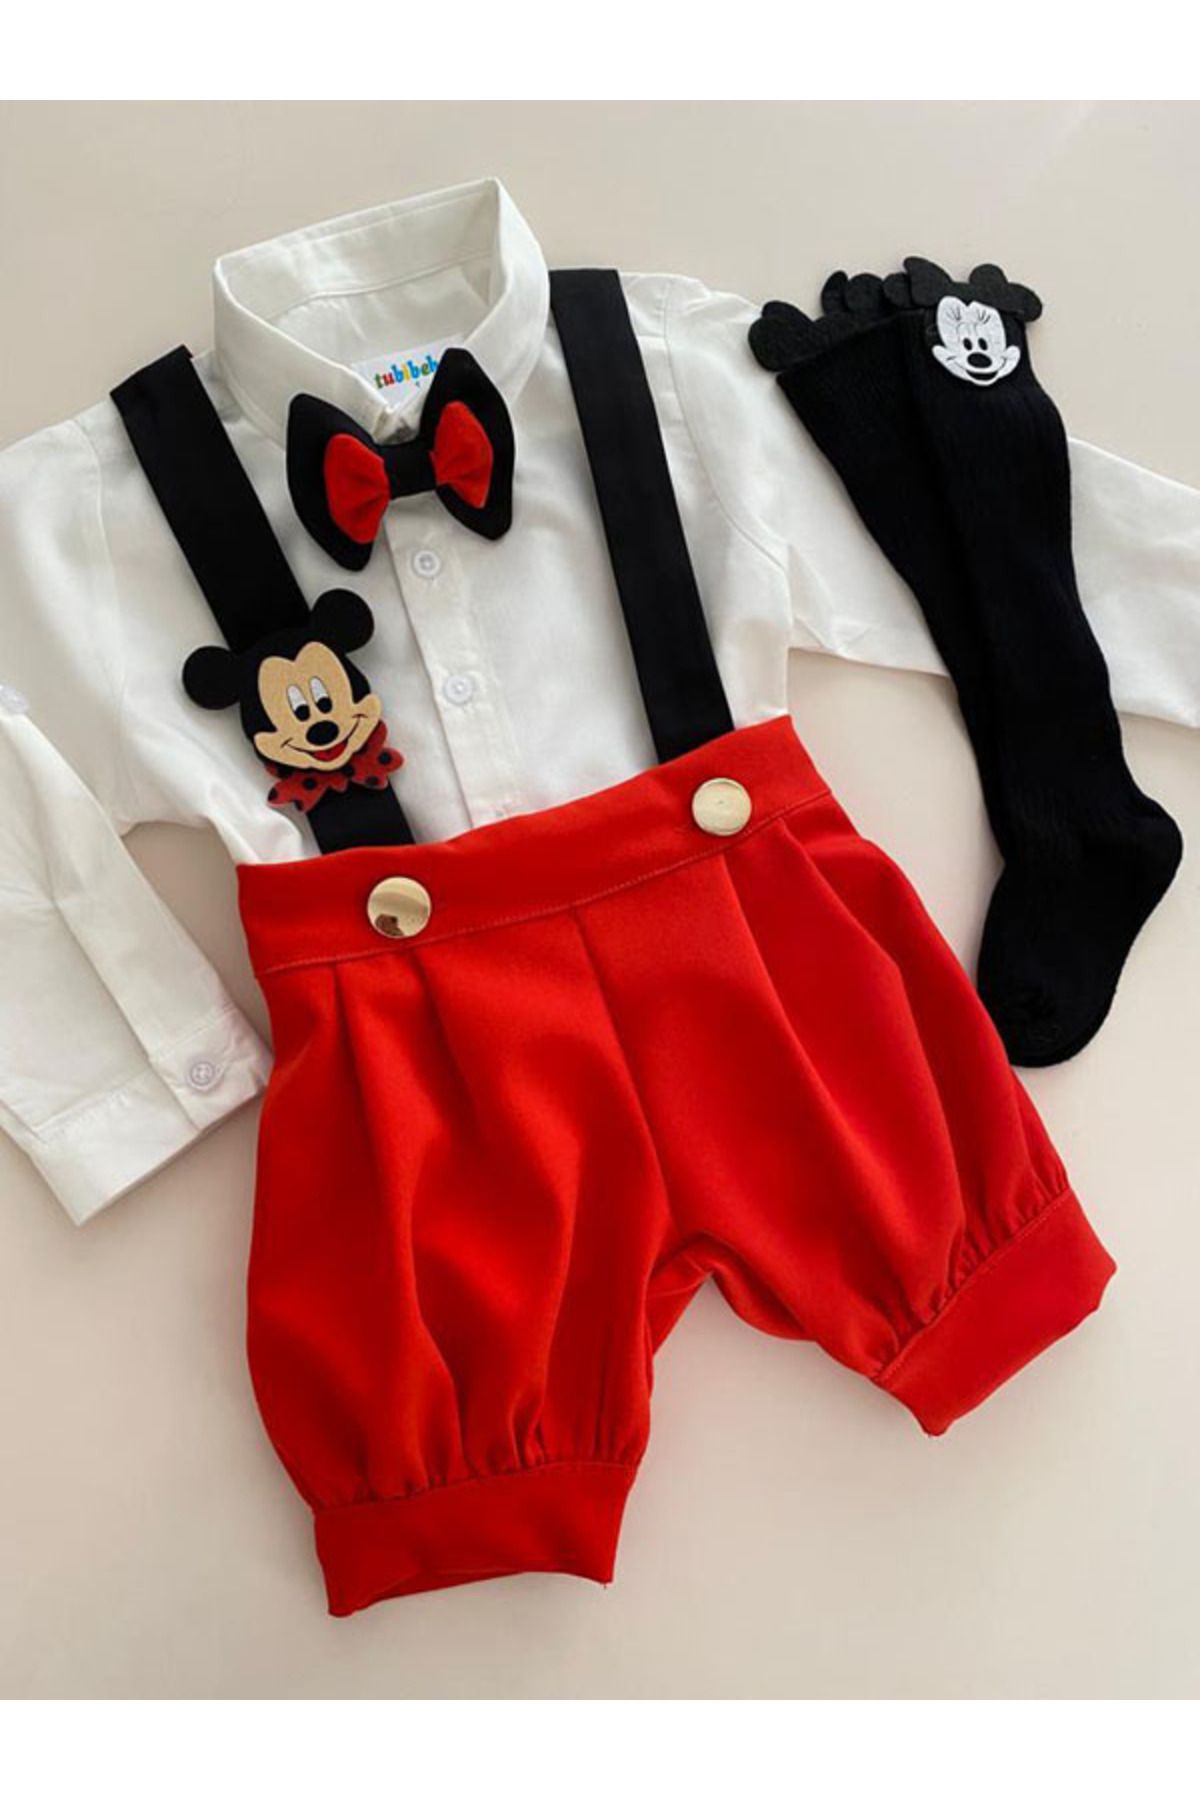 tubibebe Mıckey Mouse Doğum Günü Kıyafeti - Bebek Kostüm - Fotoğraf Çekimi Kostümü - Doğumgünü